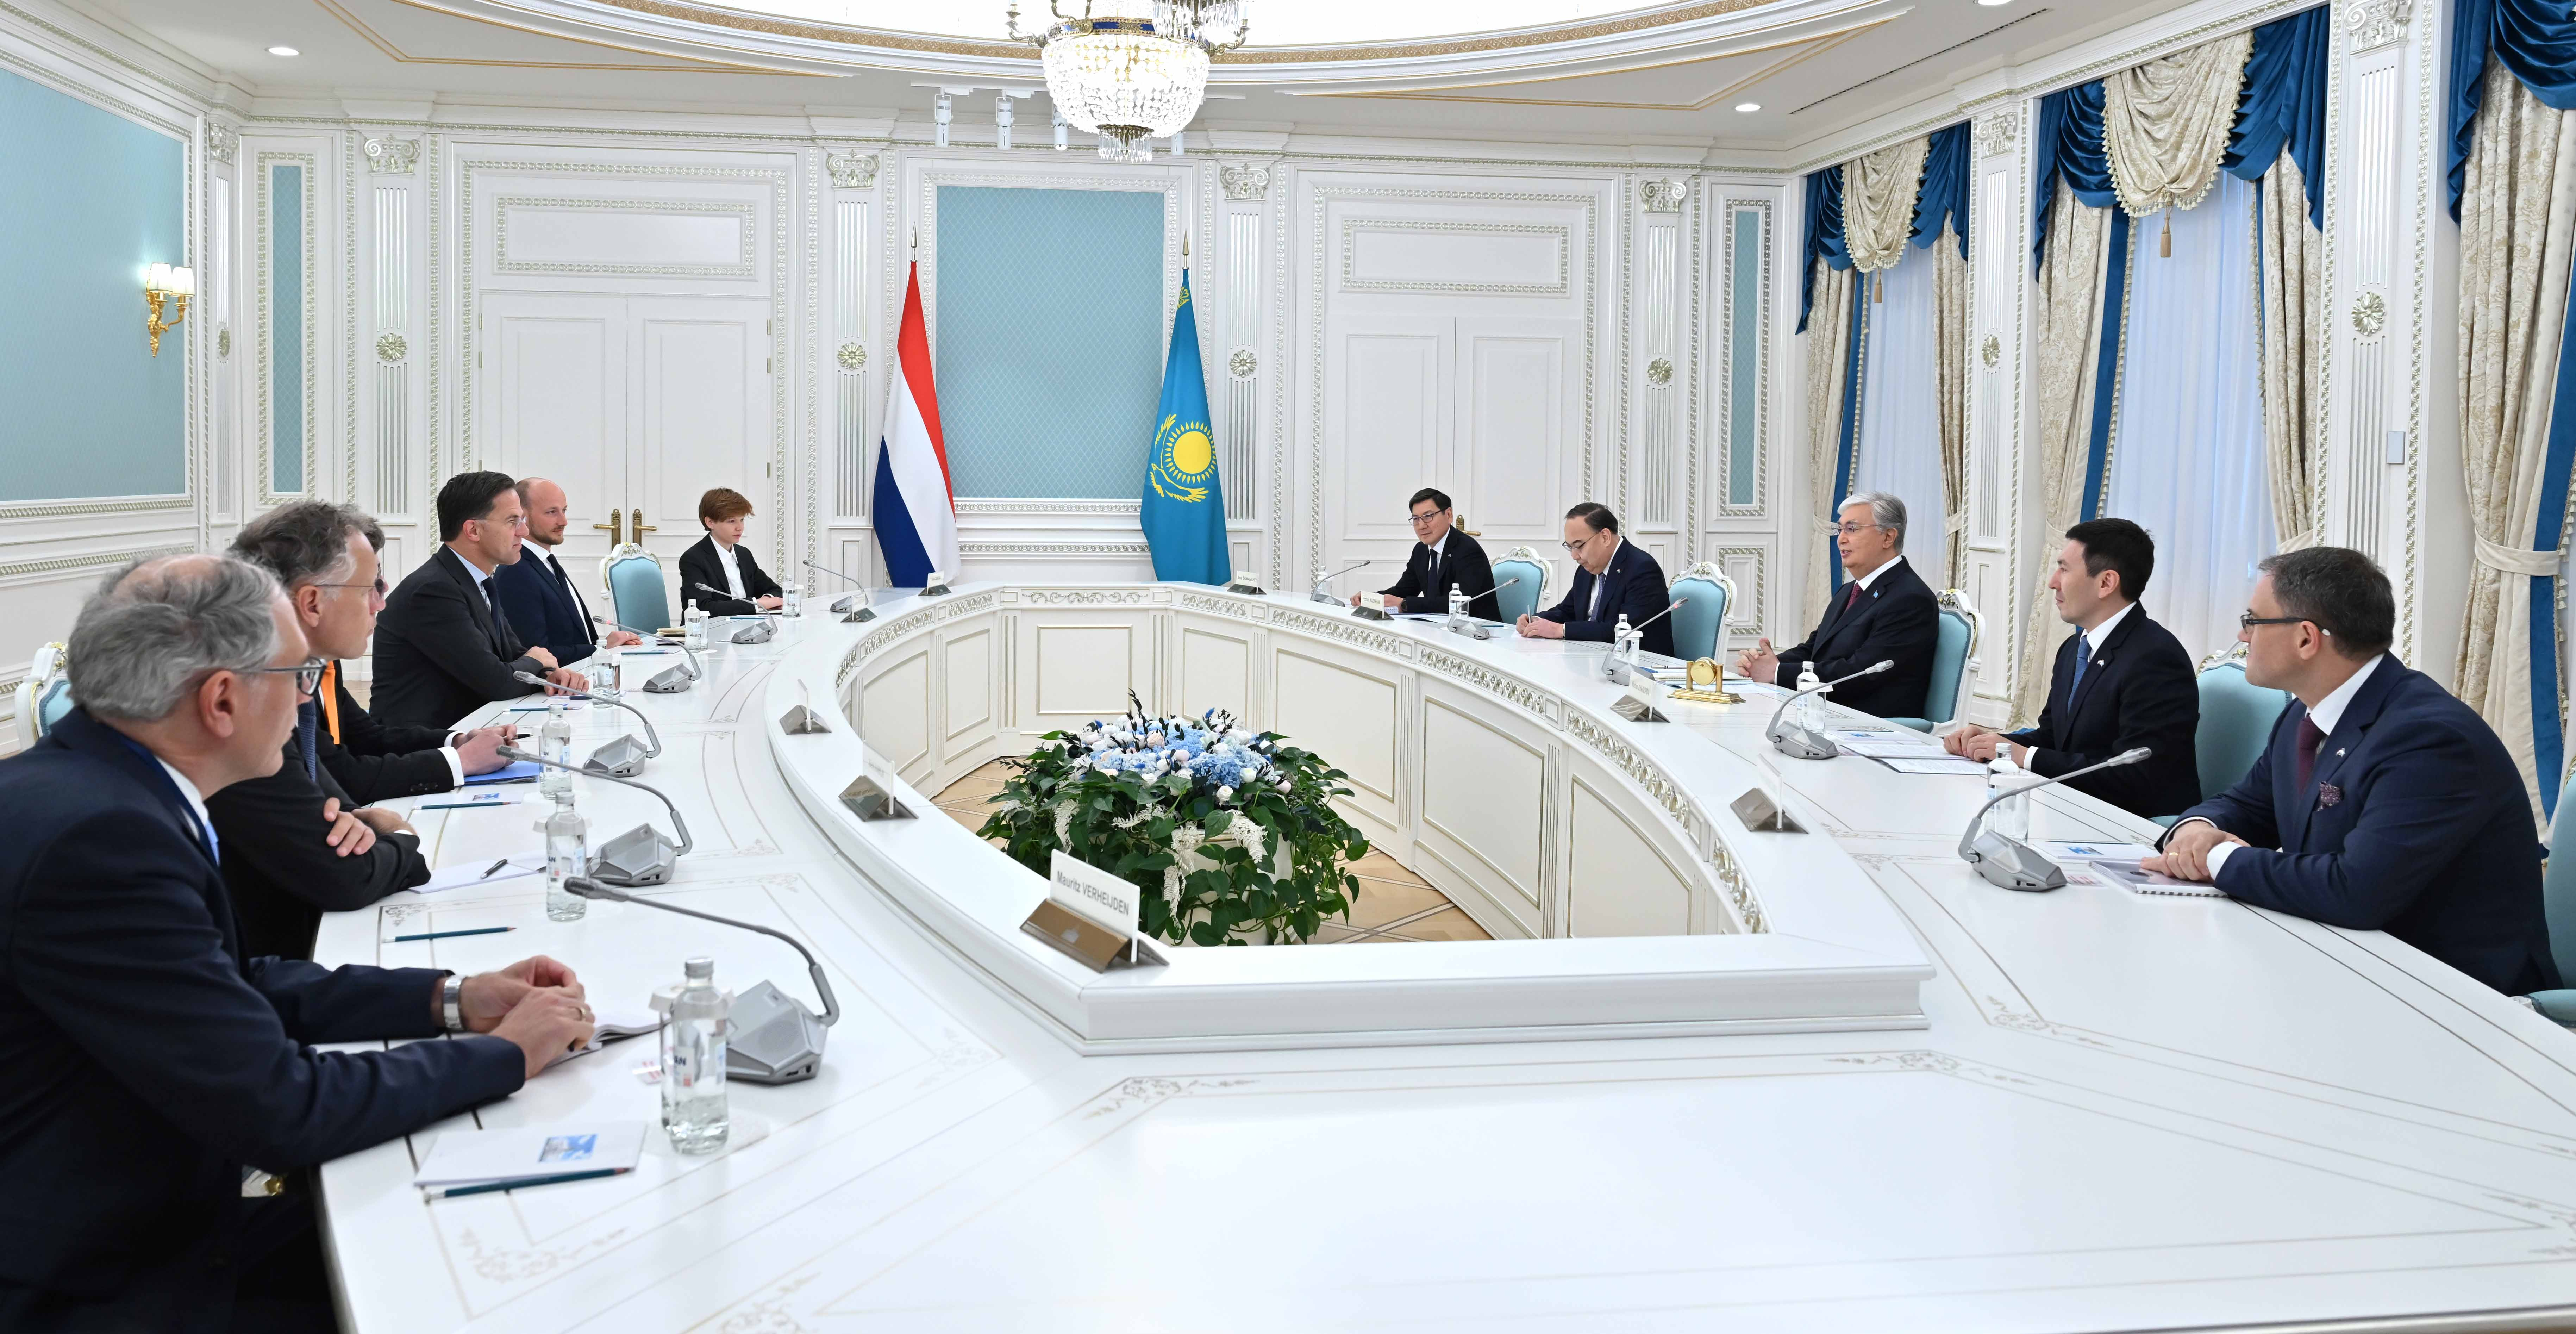 تاکید قزاقستان و هلند بر اهمیت ادامه مذاکرات در چارچوب همگرایی اروپا